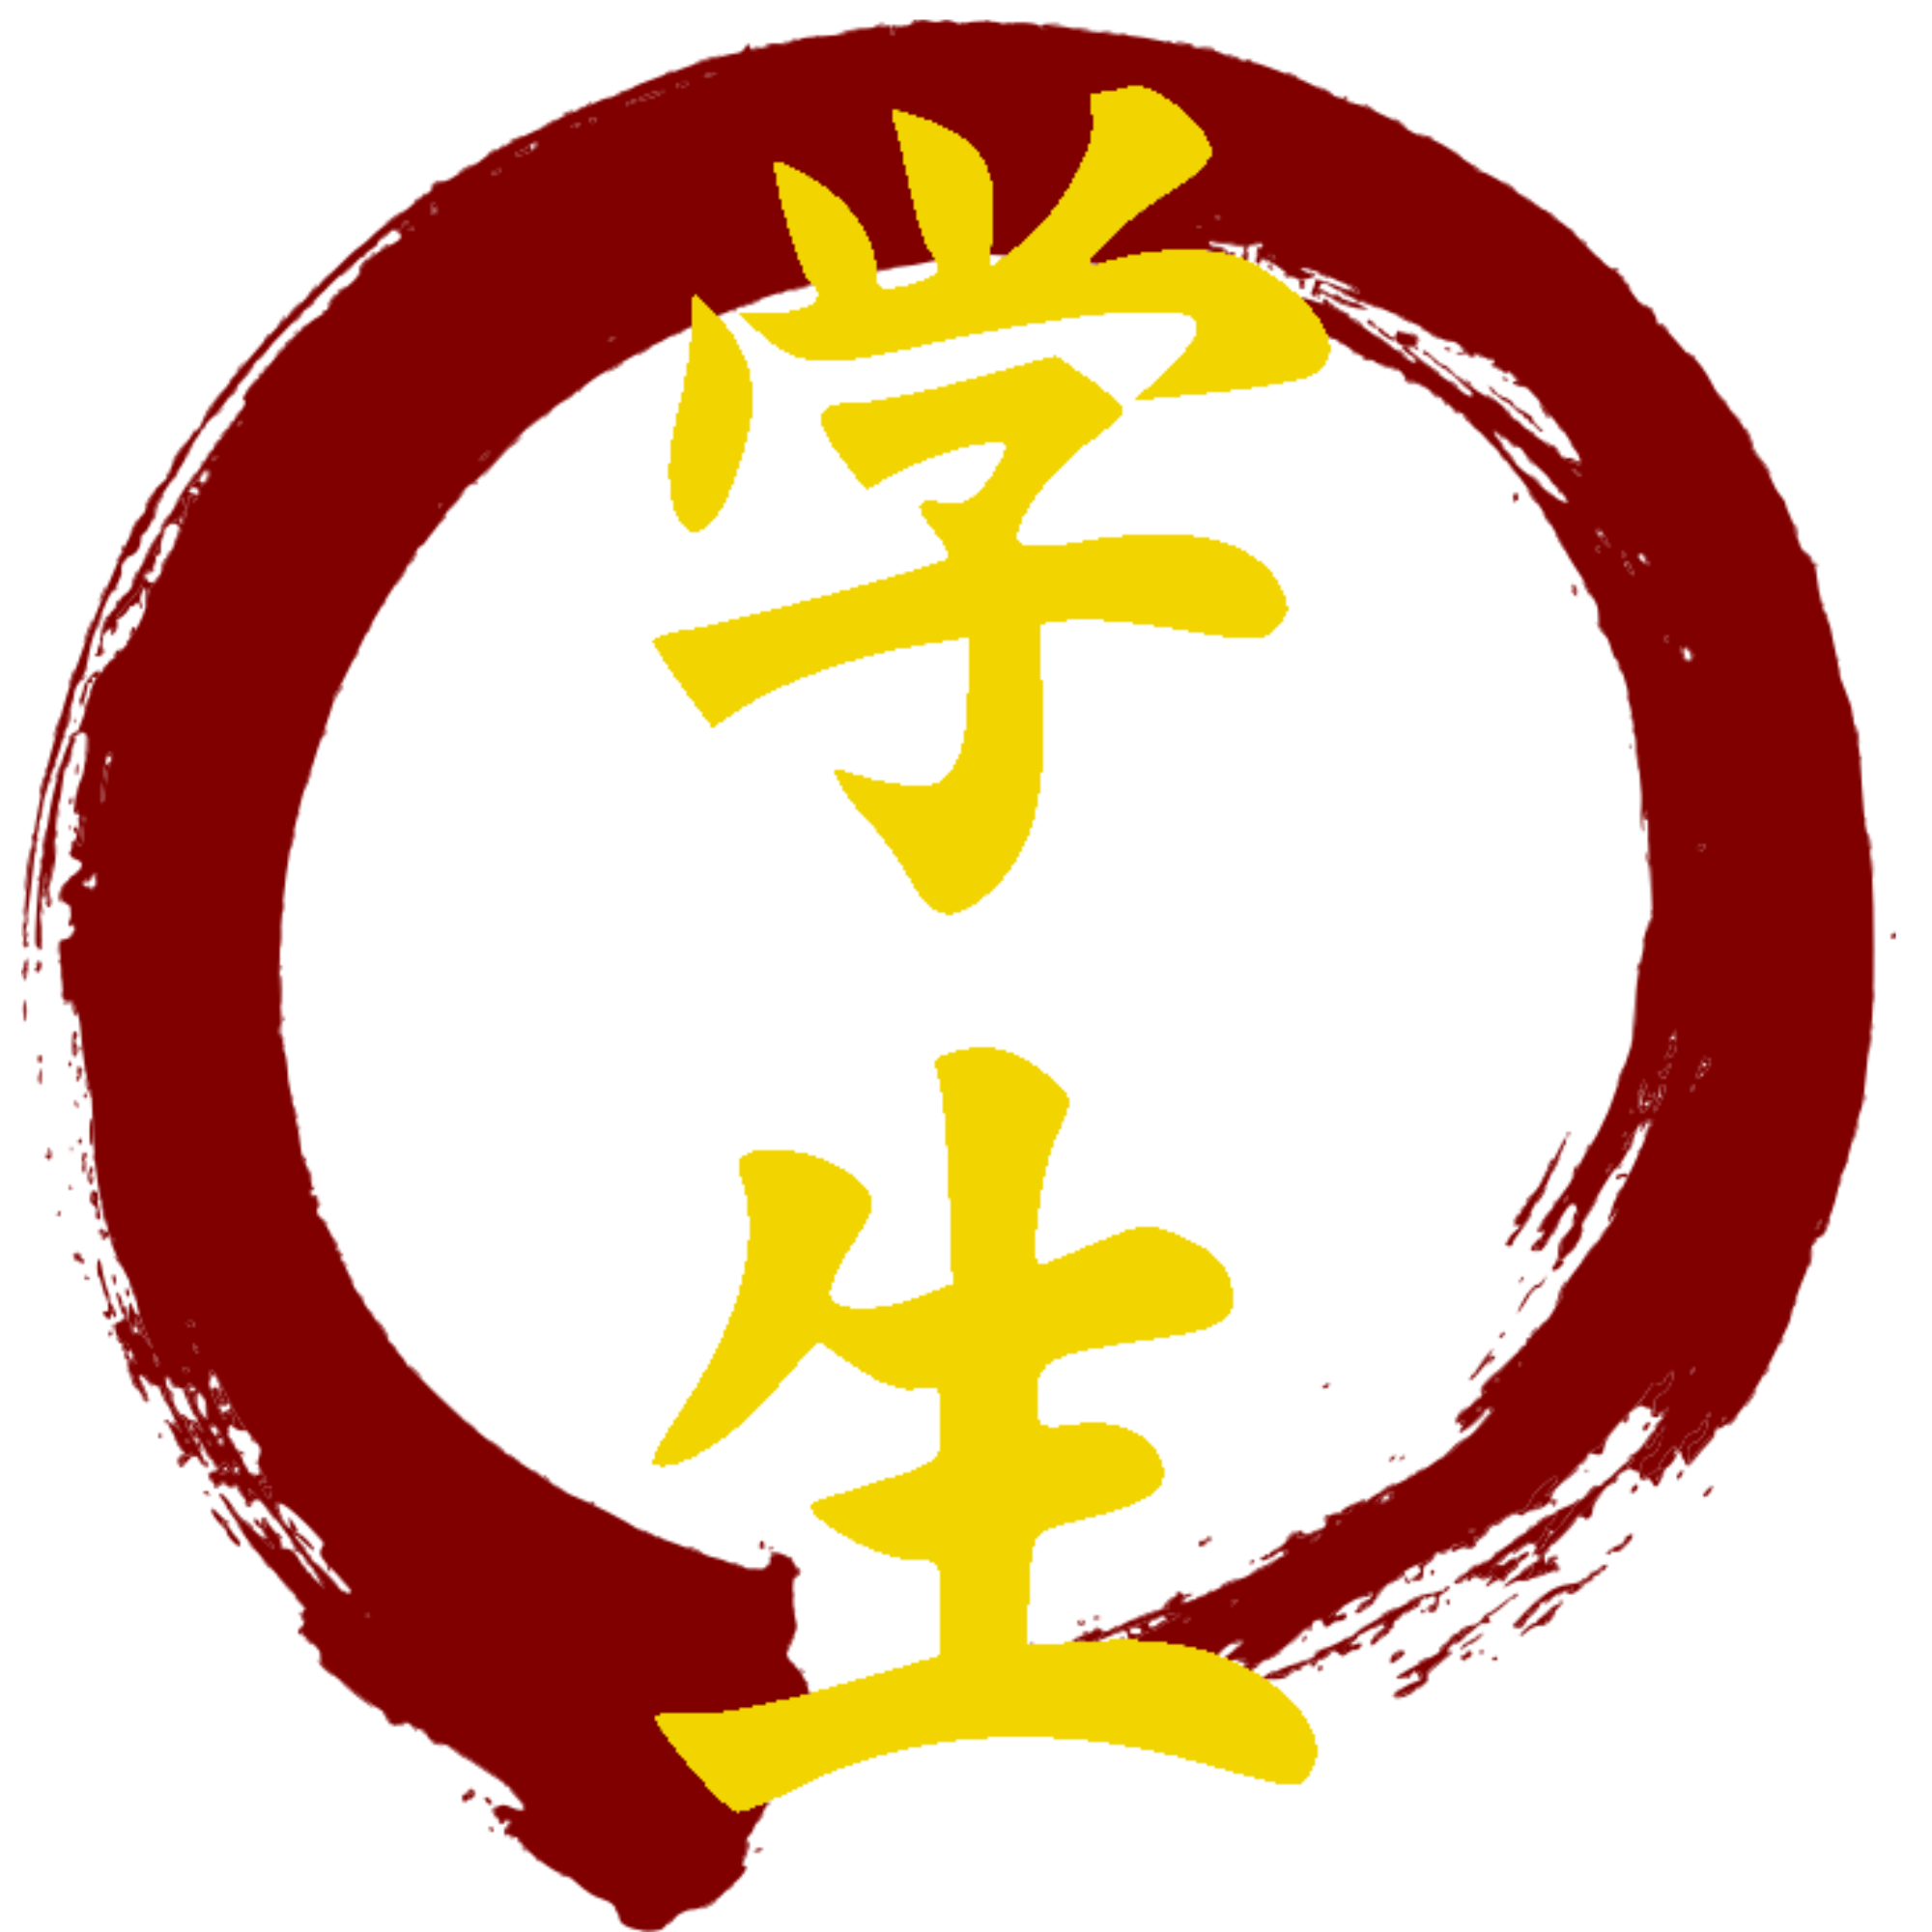 Gakusei Karate - Martial Arts Classes in Romford